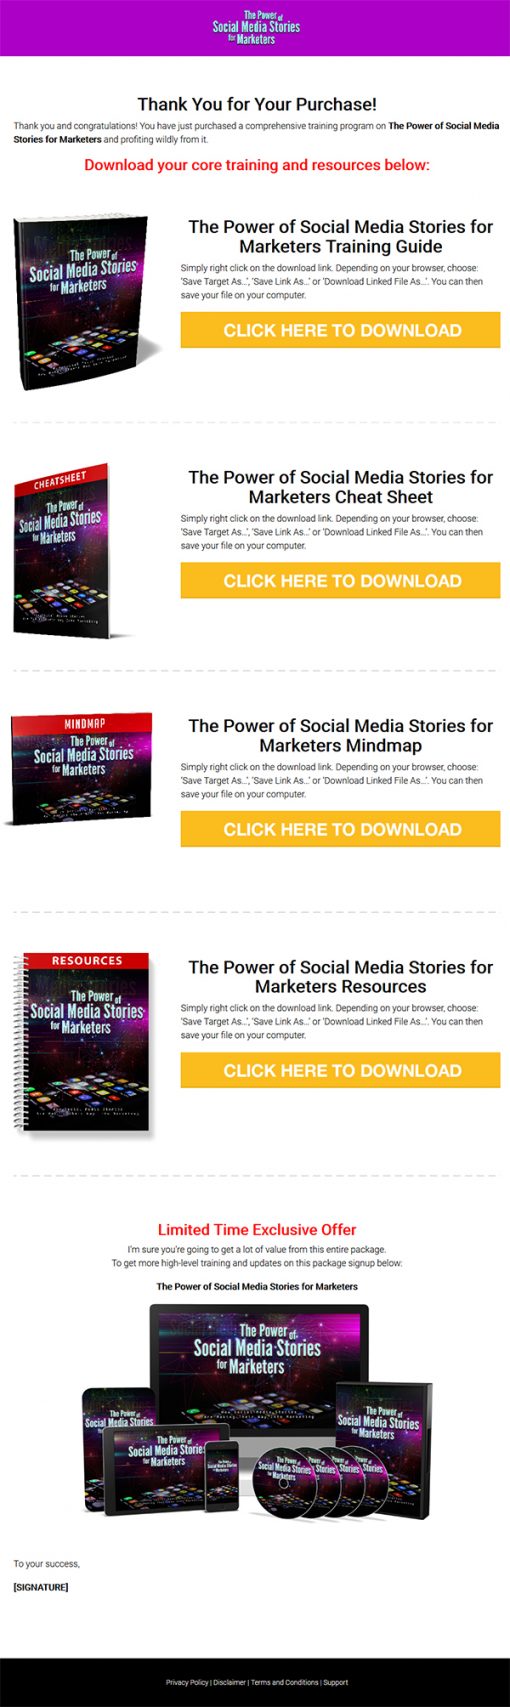 Power of Social Media Stories PLR Ebook and Videos MRR